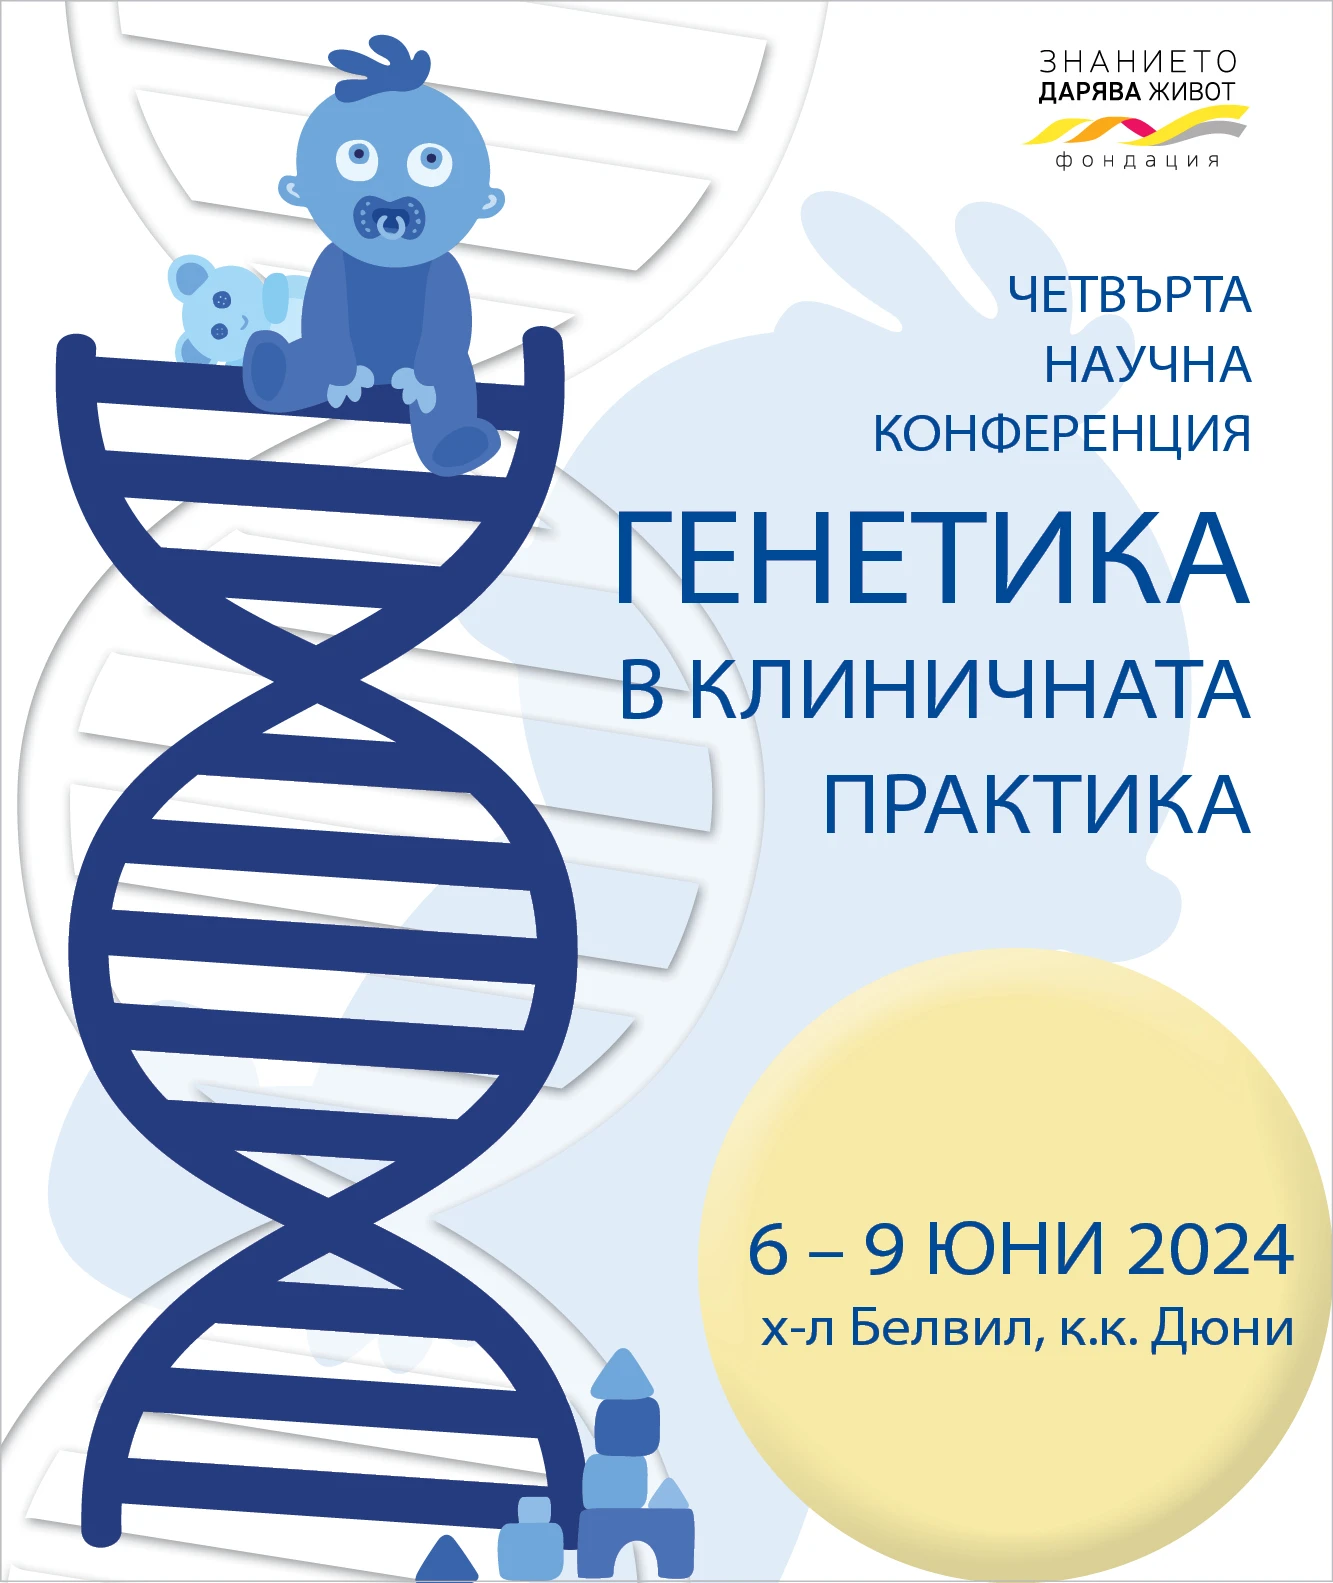 Четвърта научна конференция "Генетика в клиничната практика"